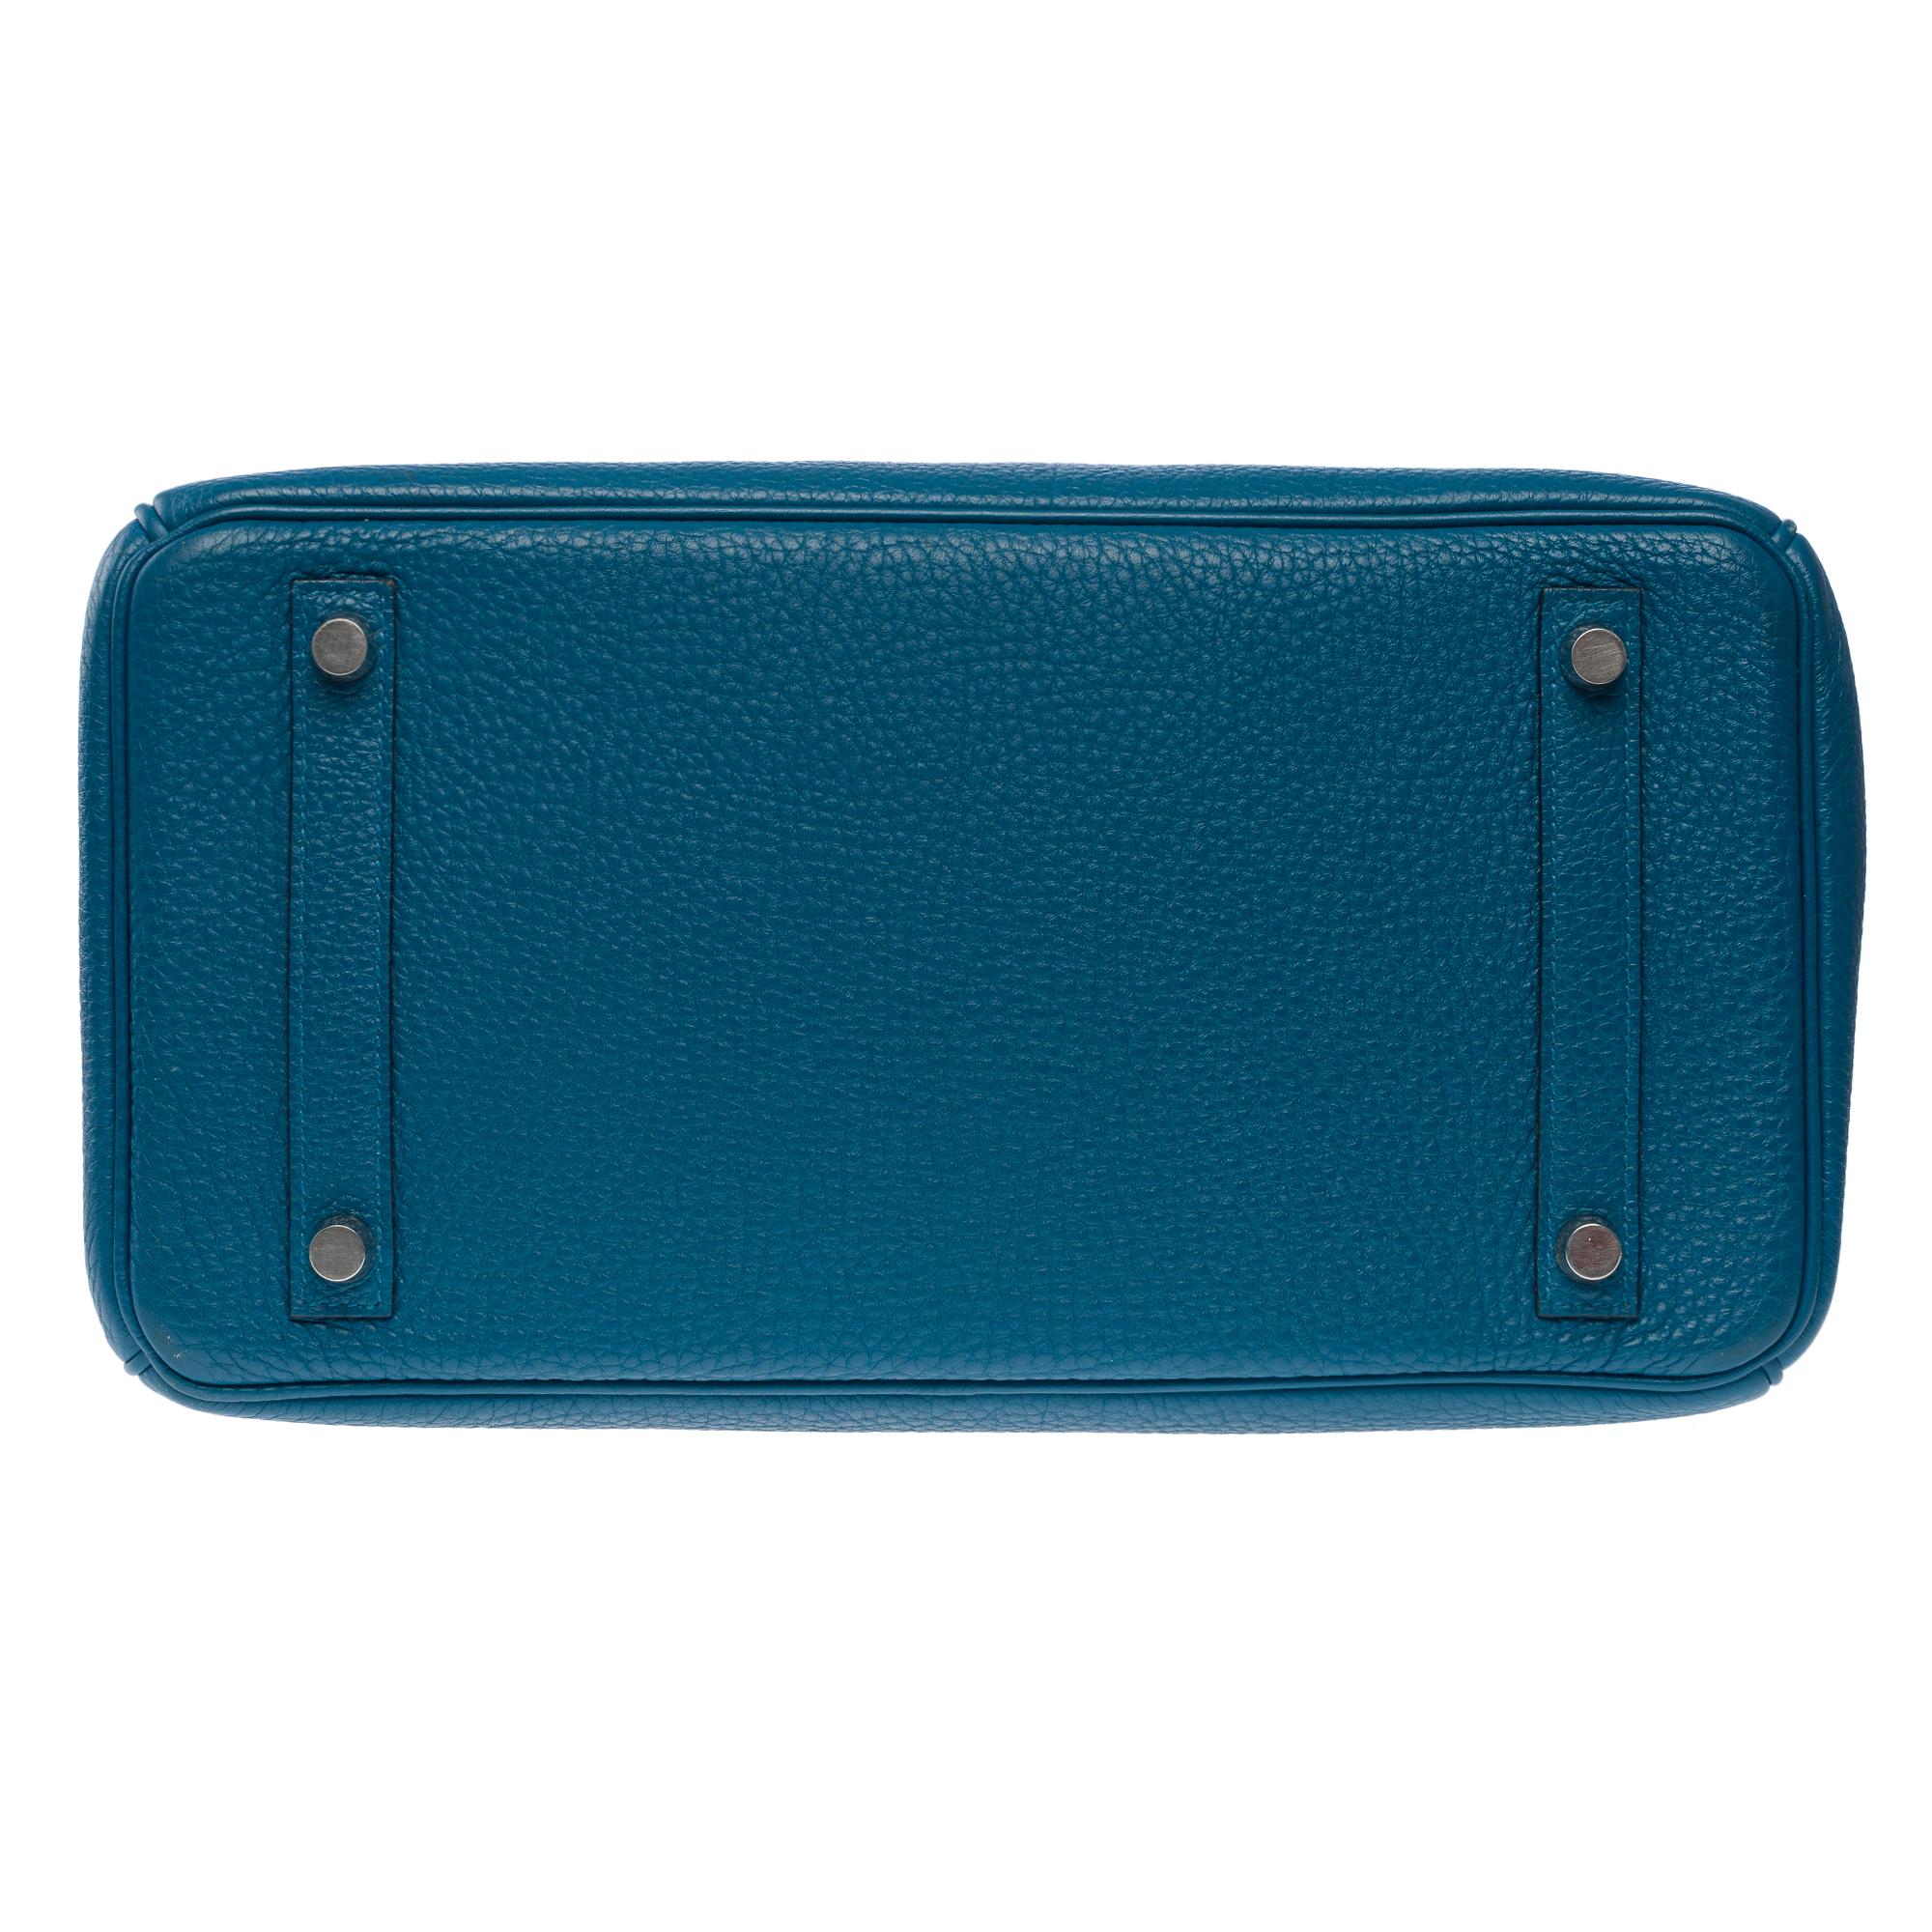 Stunning Hermes Birkin 30 handbag in Blue Togo leather, SHW For Sale 7